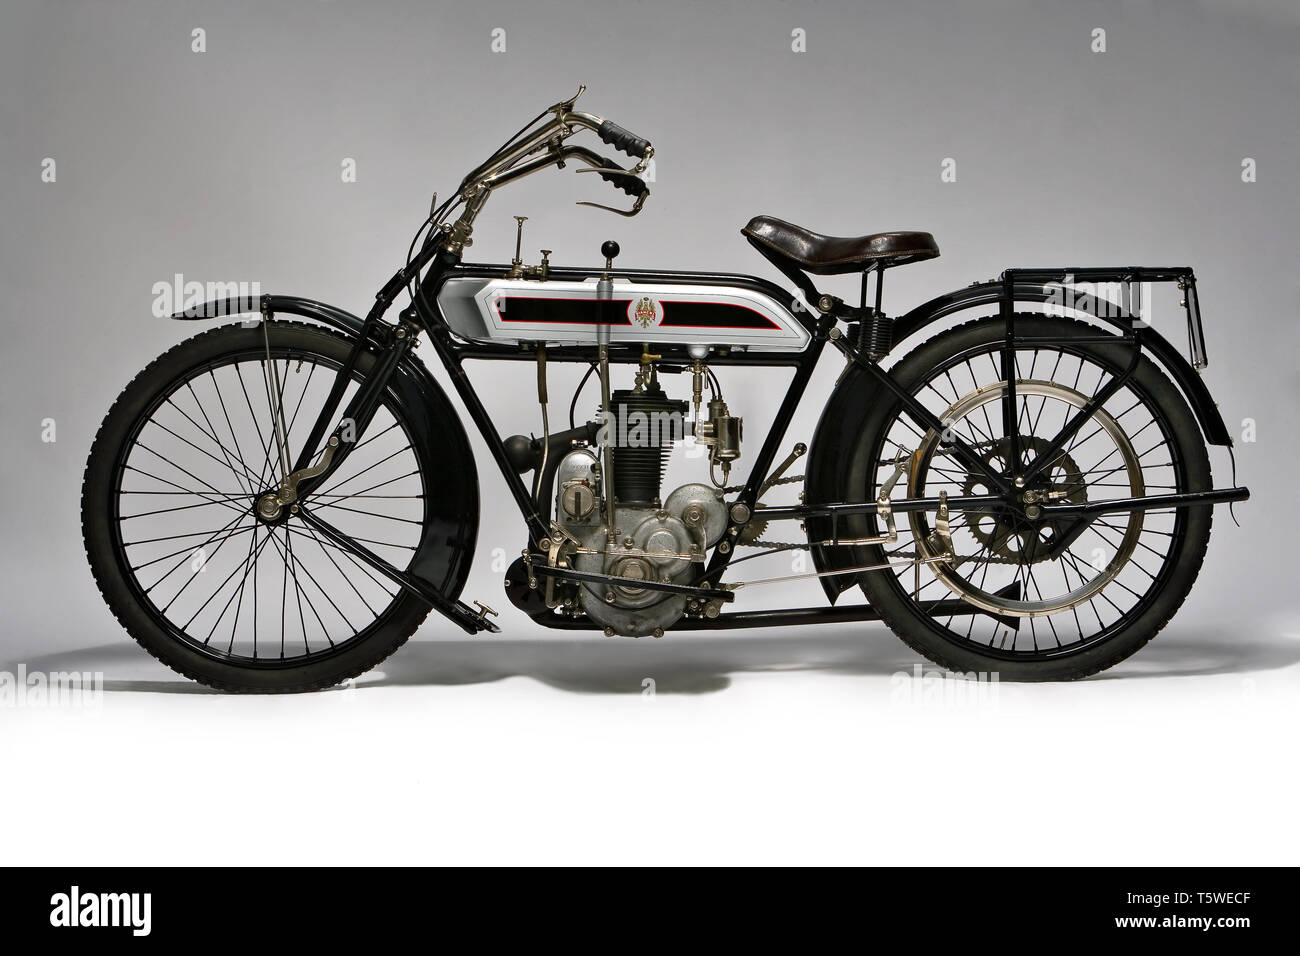 Moto d'Epoca Bianchi C 75 La fabbrica: Bianchi modello: C 75 Un fabbricata en: Italia - Milano: anno 1914 condizioni: restaurata cilin Foto de stock